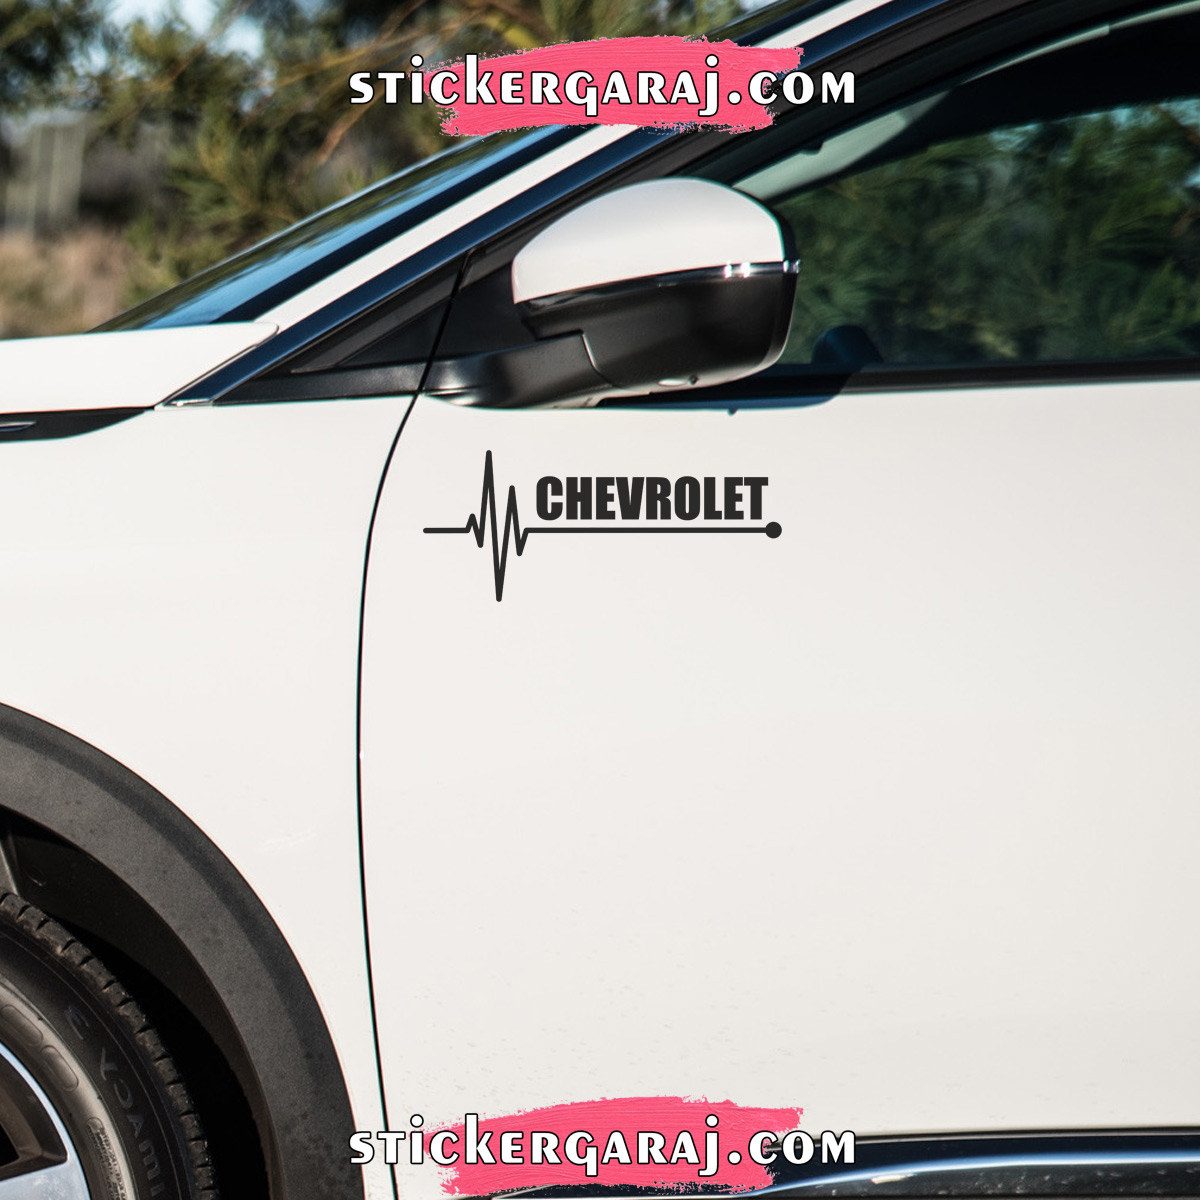 Chevrolet oto sticker - Chevrolet yan ayna altı sticker